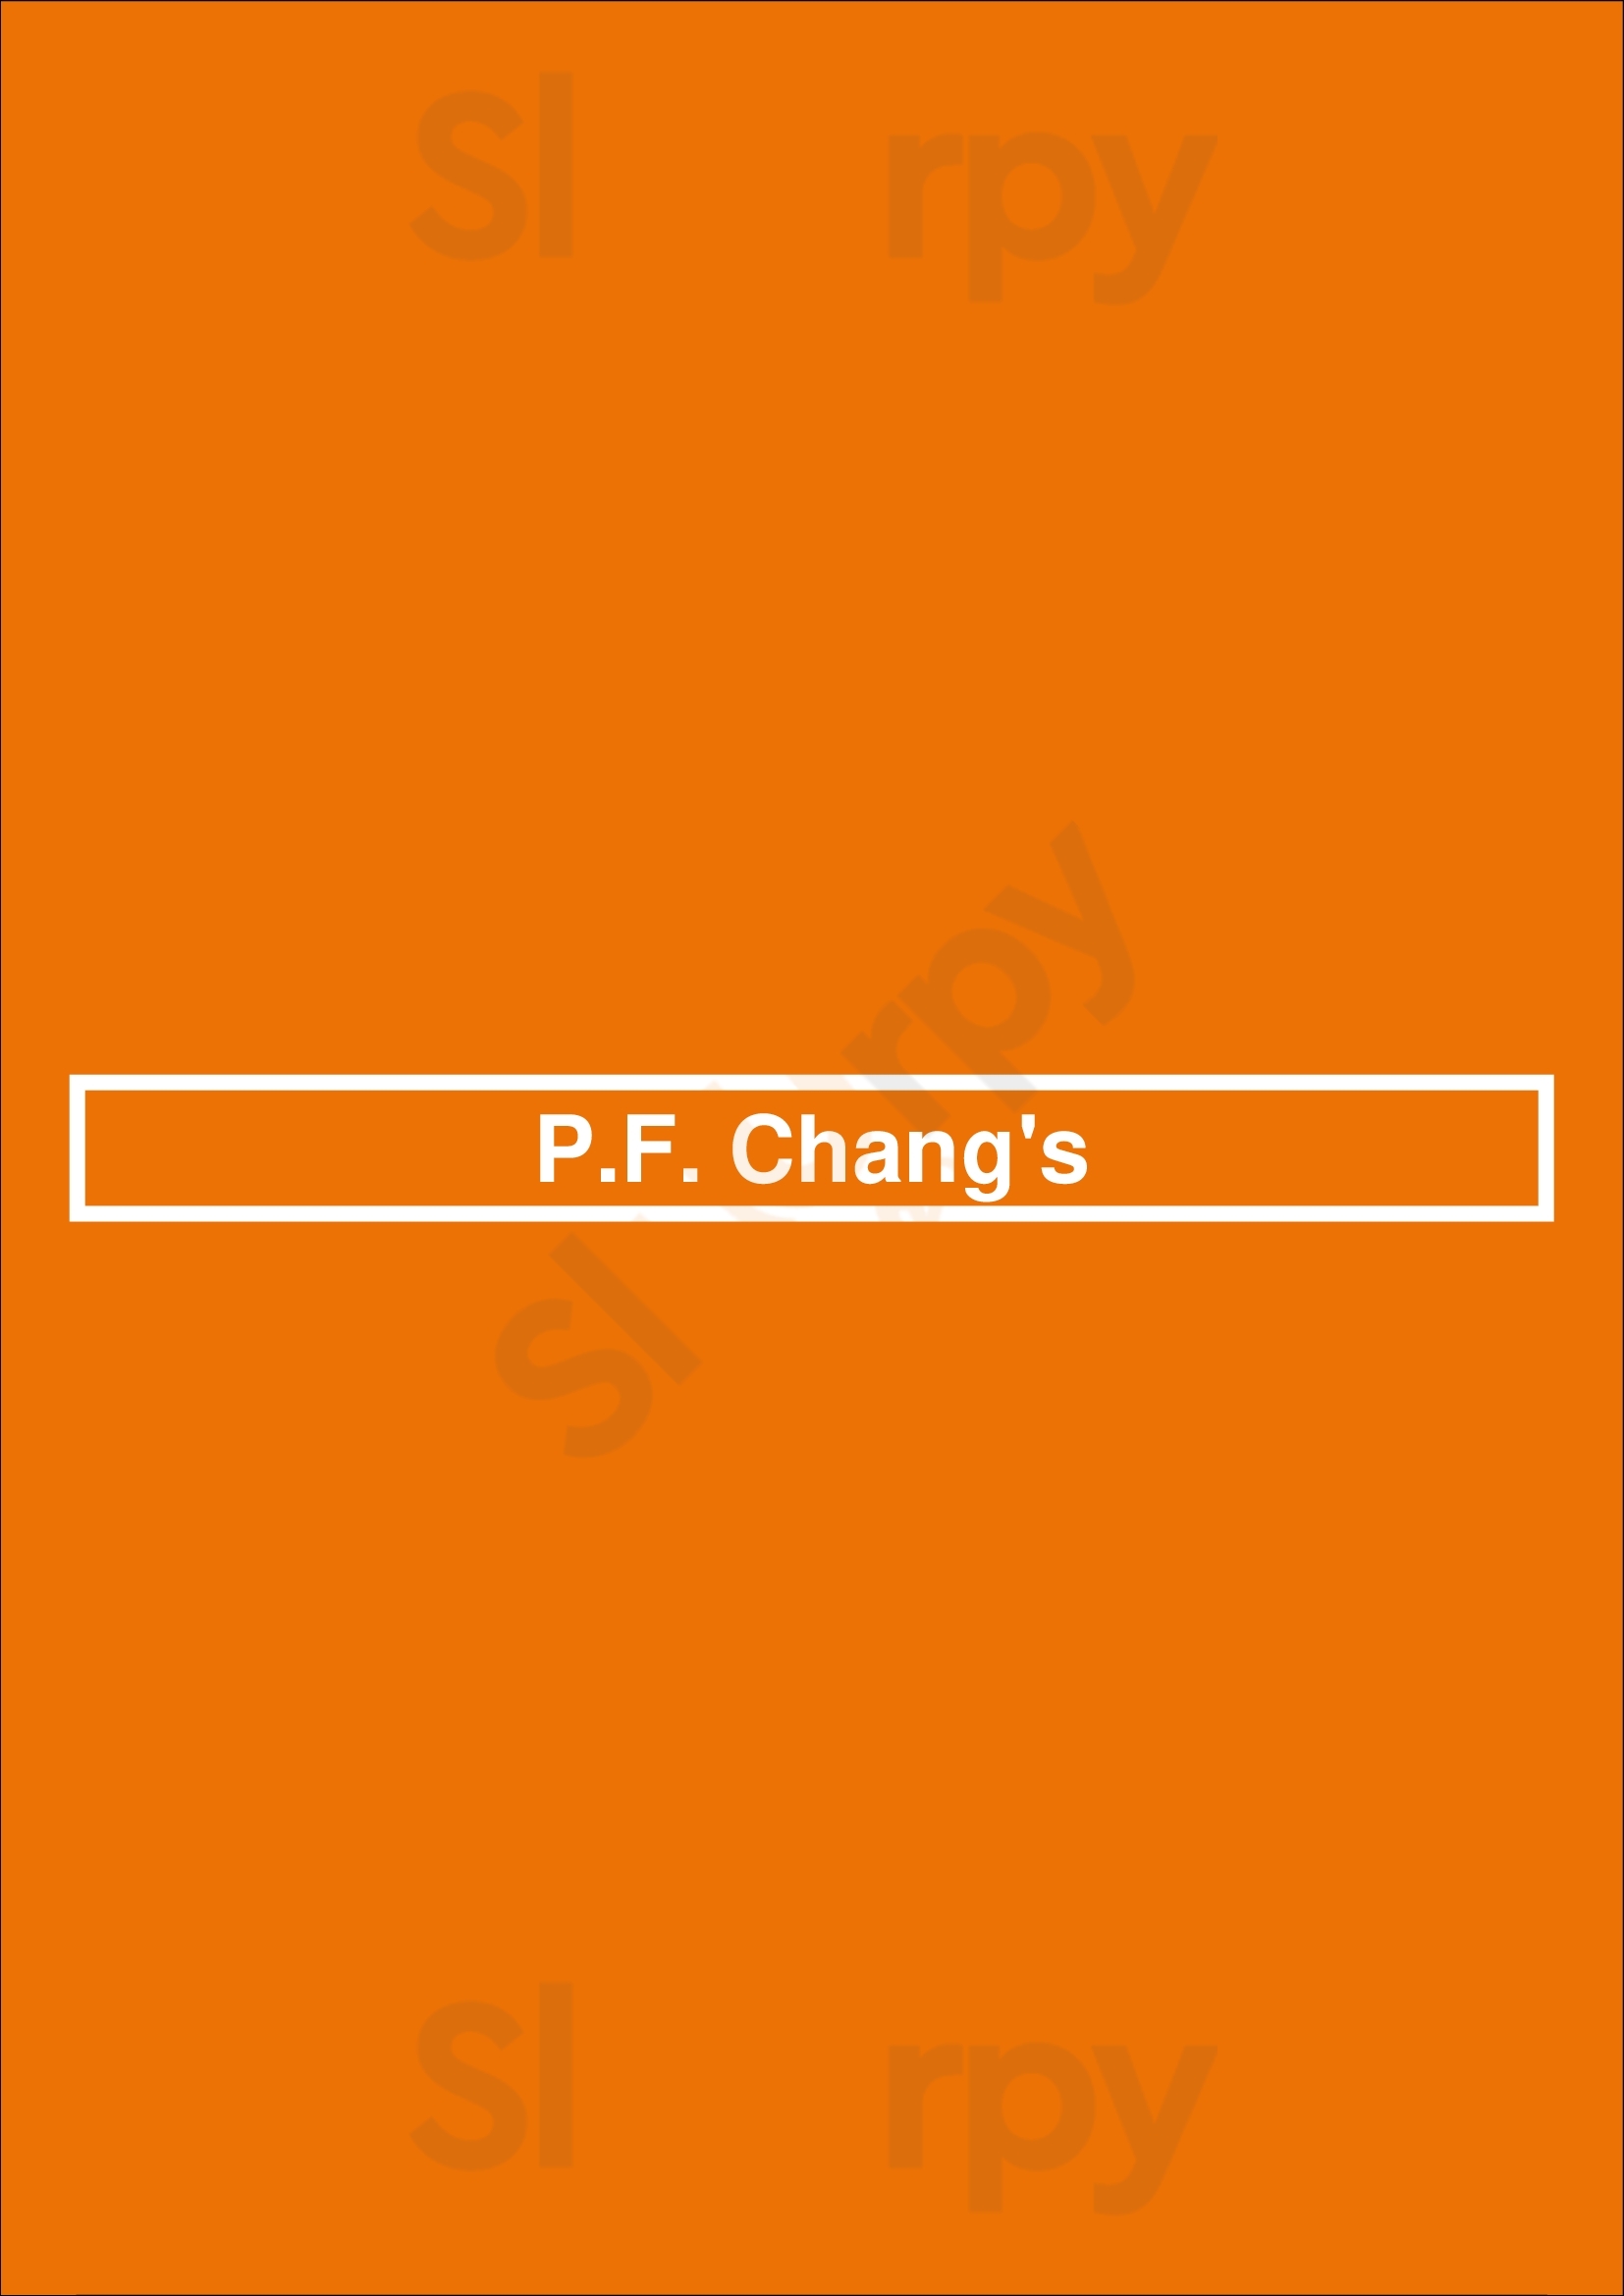 P.f. Chang's Salt Lake City Menu - 1